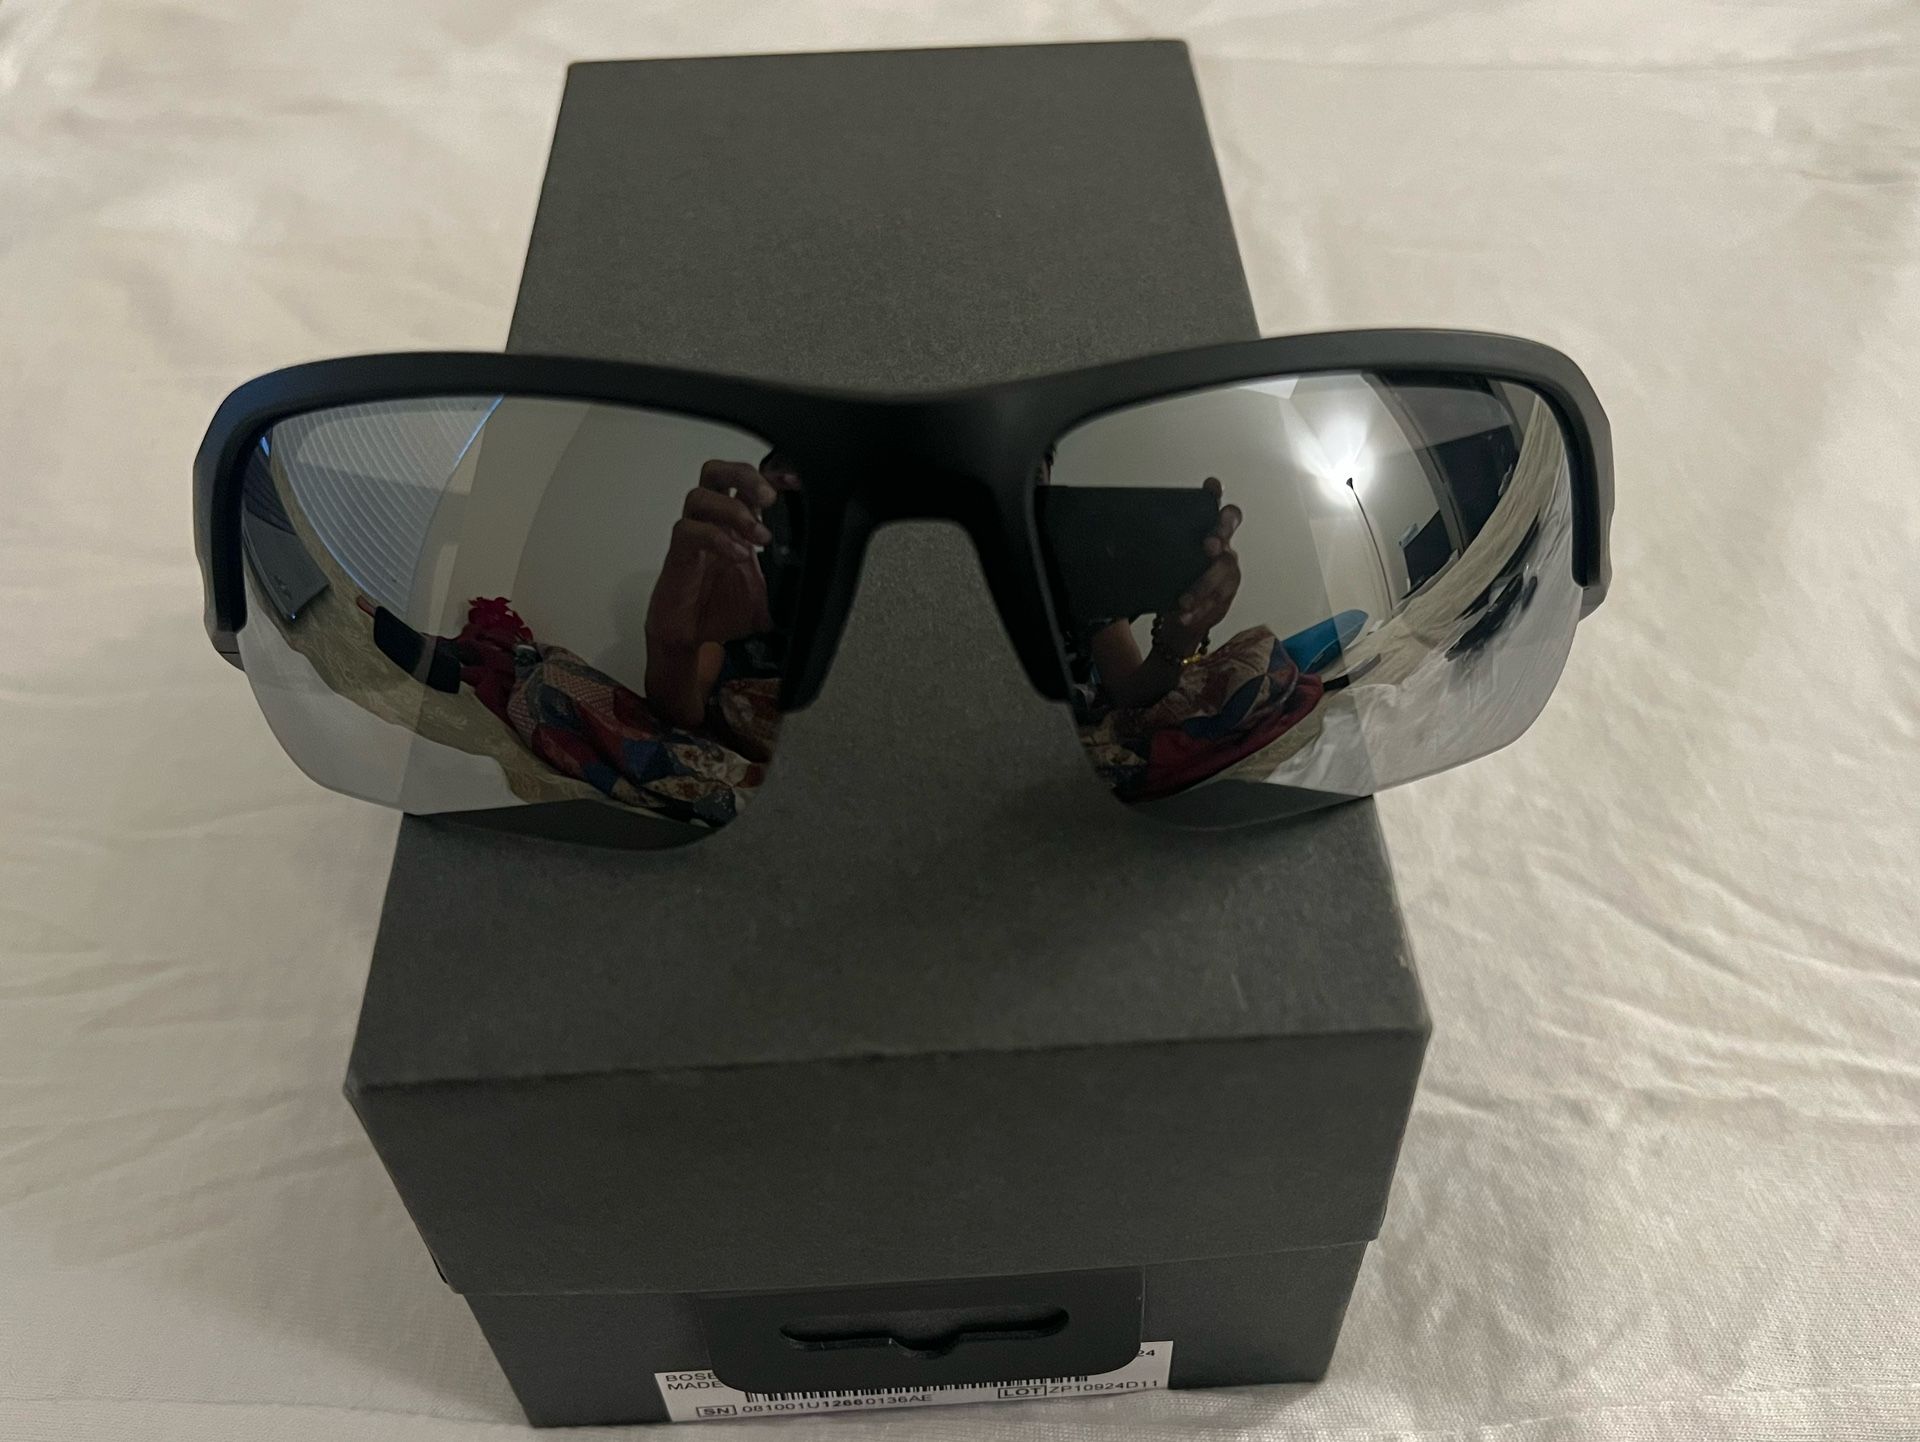 Bose Frames Tempo Sunglasses